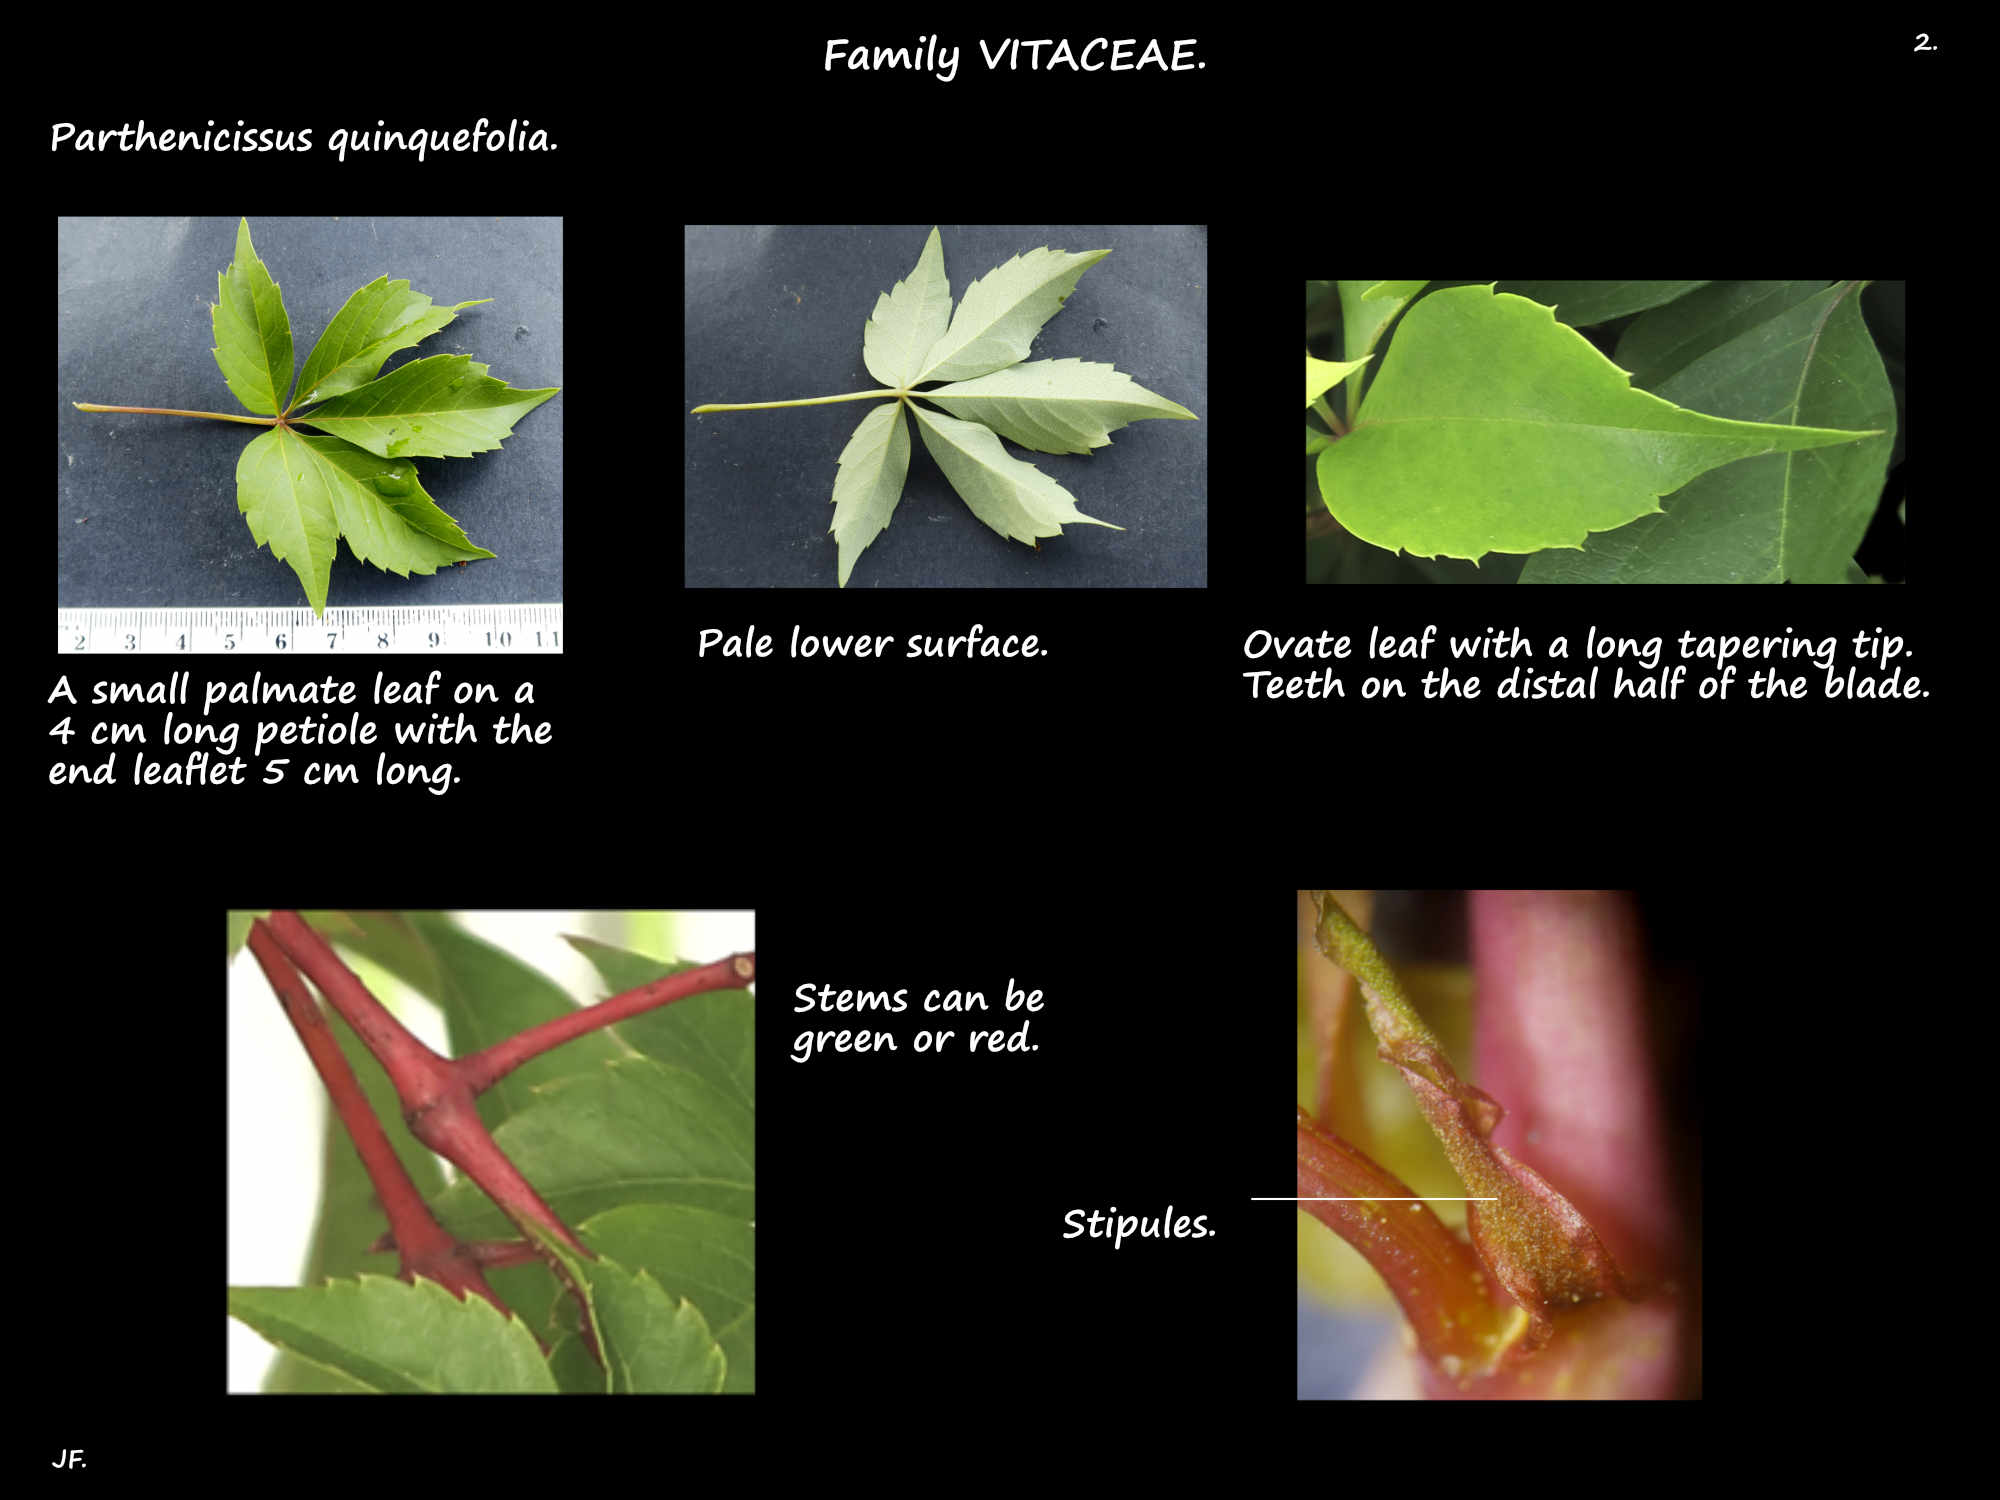 2 Palmate leaves of Parthenocissus quinquefolia